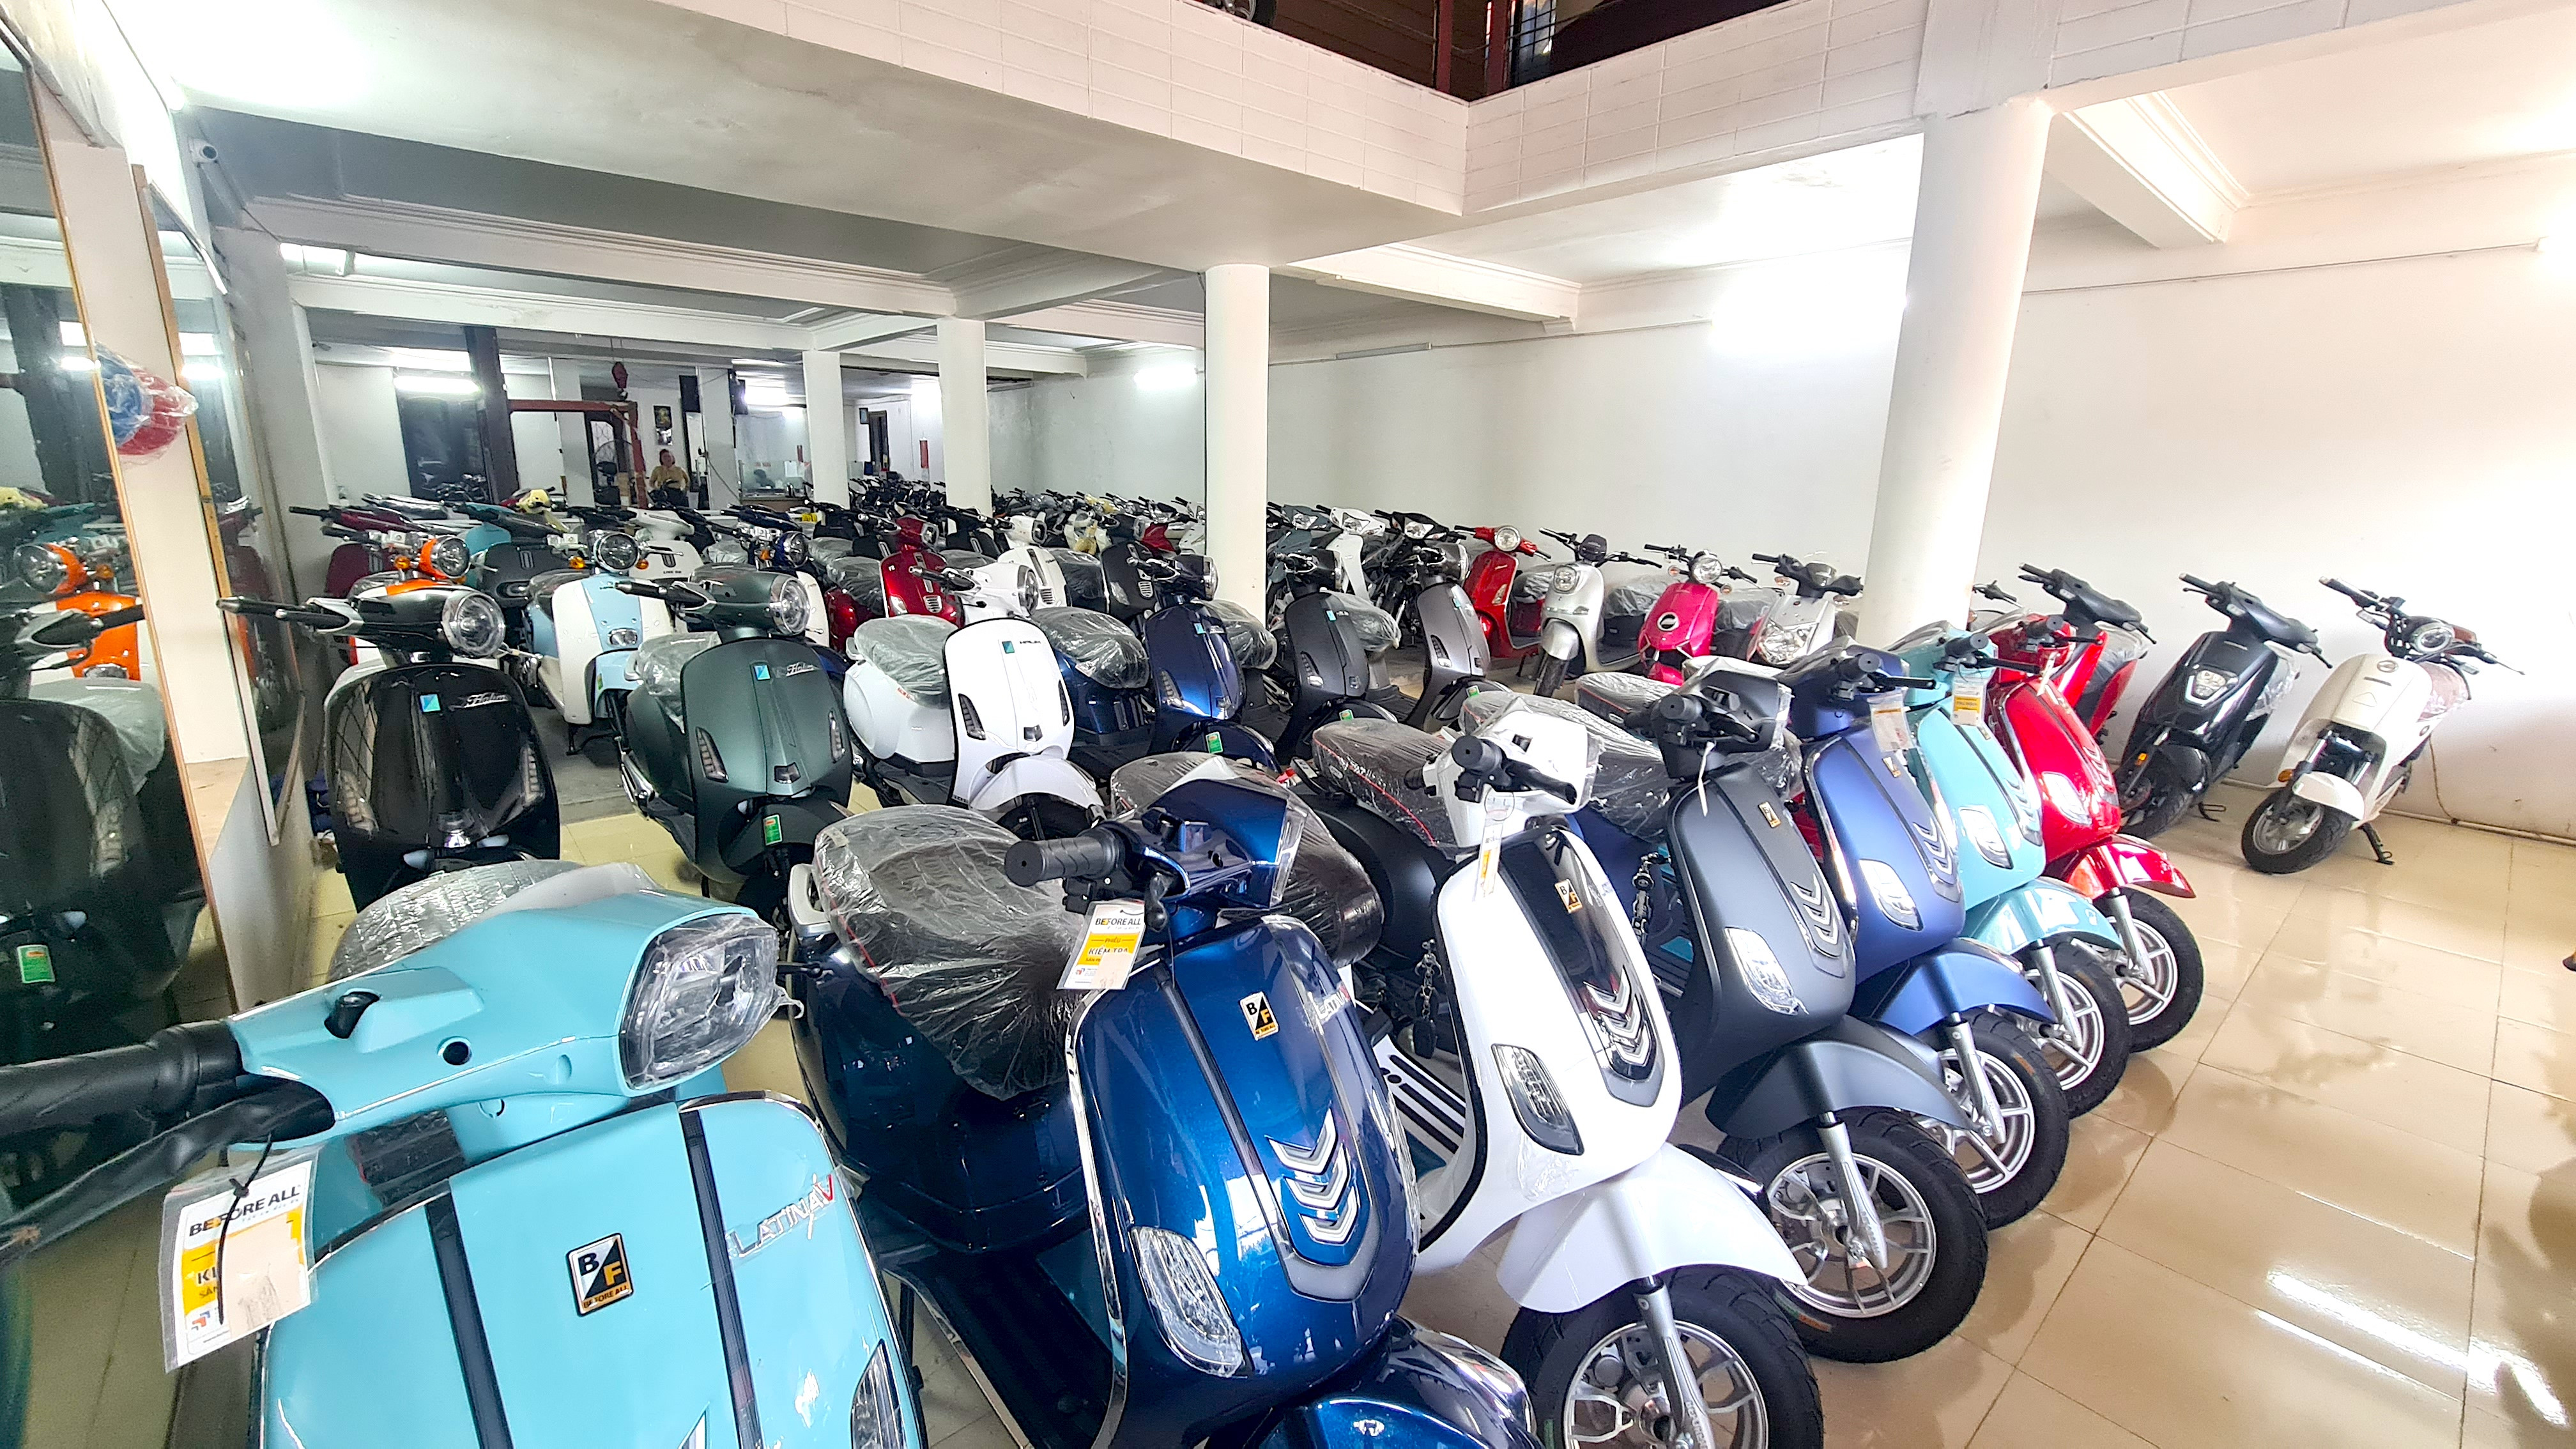 bna_ Các cơ sở buôn bán xe máy điện, xe đạp điện tăng cường nhạp hàng bắt đầu từ tháng 6 hàng năm.jpg